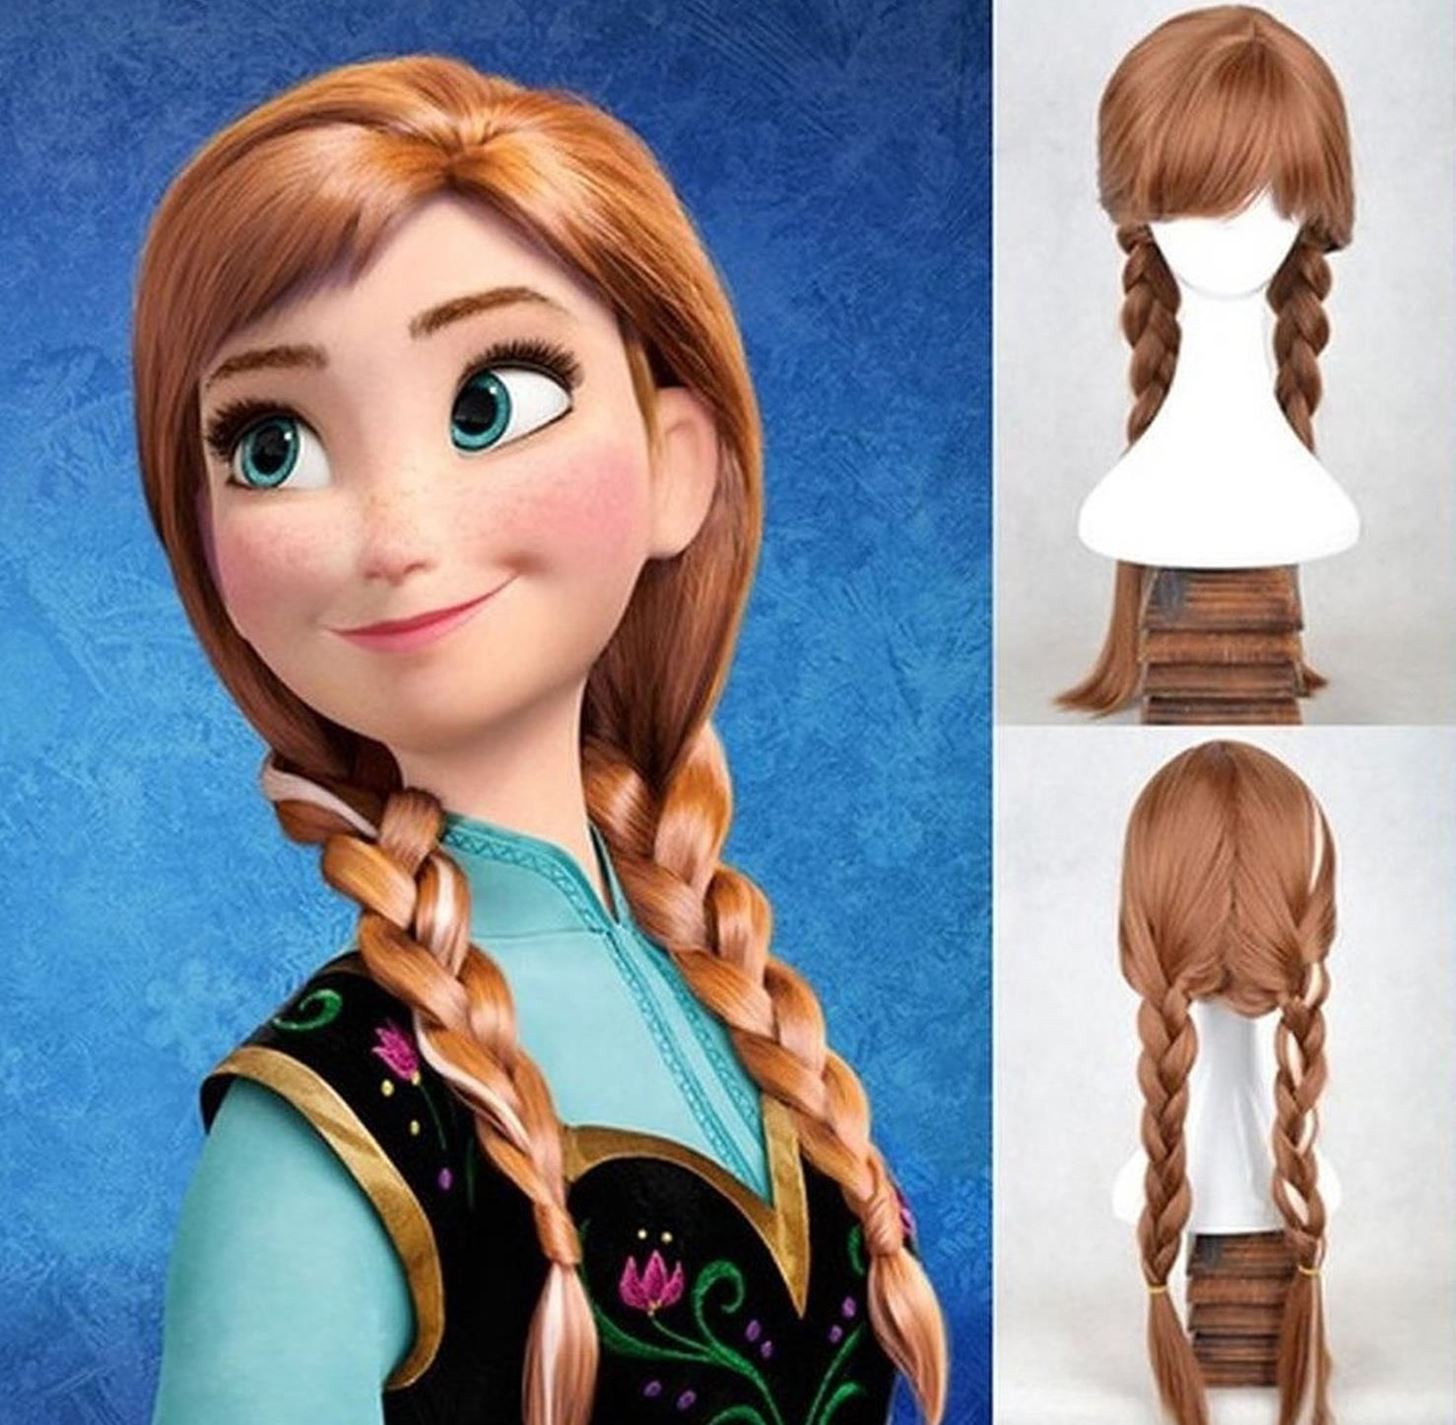 DIY Princess Anna Costume & Makeup from Disney's Frozen